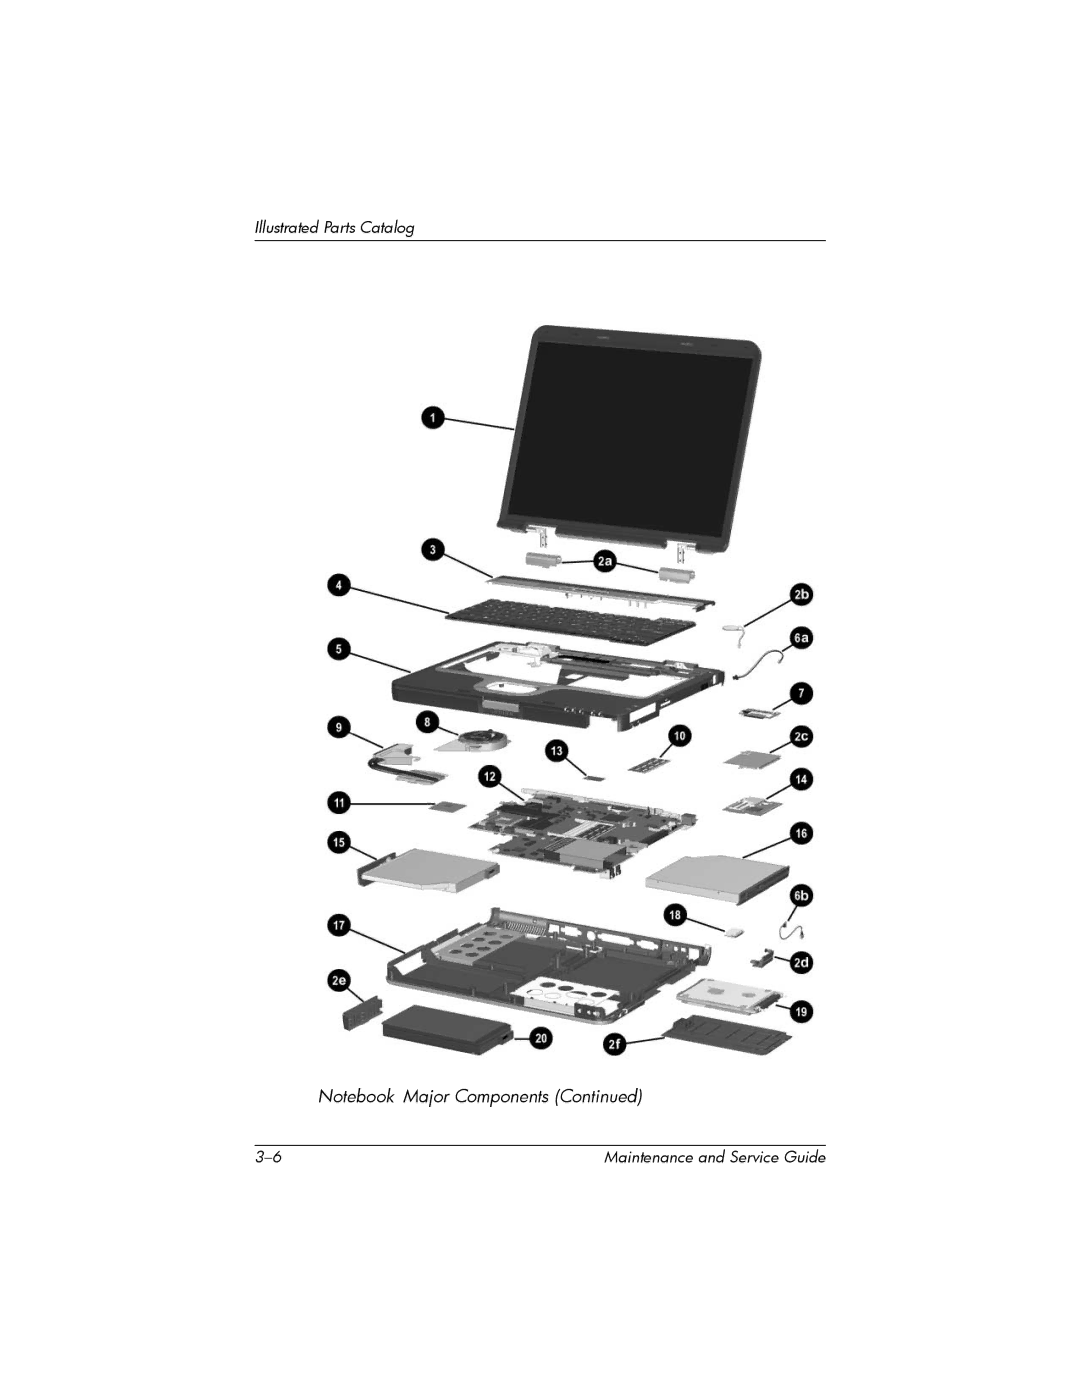 HP nw8000 manual Illustrated Parts Catalog 